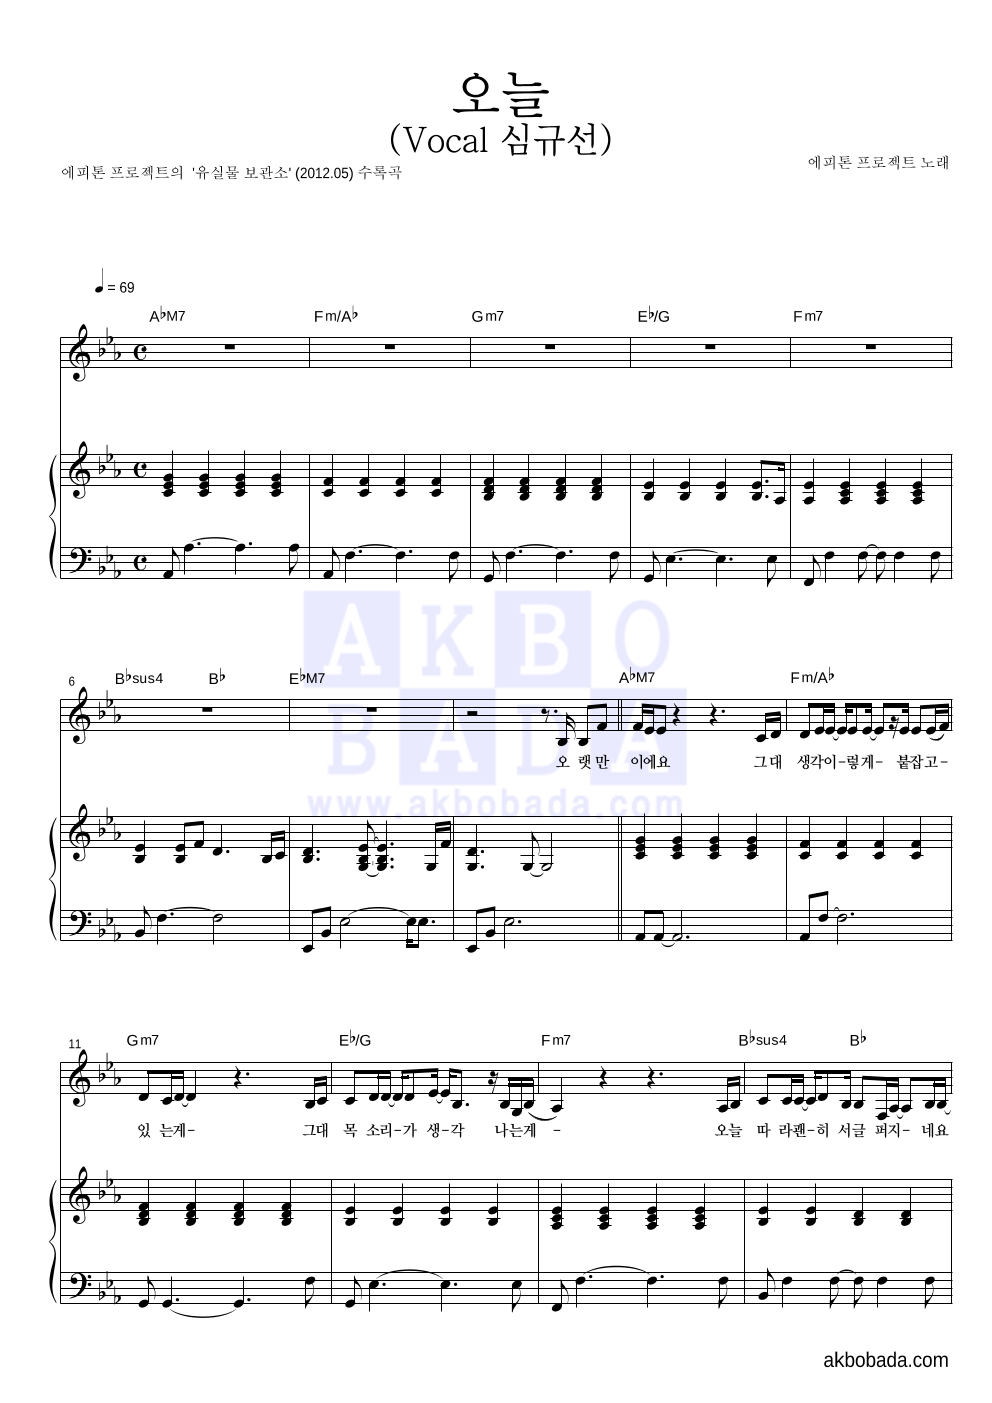 에피톤 프로젝트 - 오늘 (Vocal 심규선) 피아노 3단 악보 